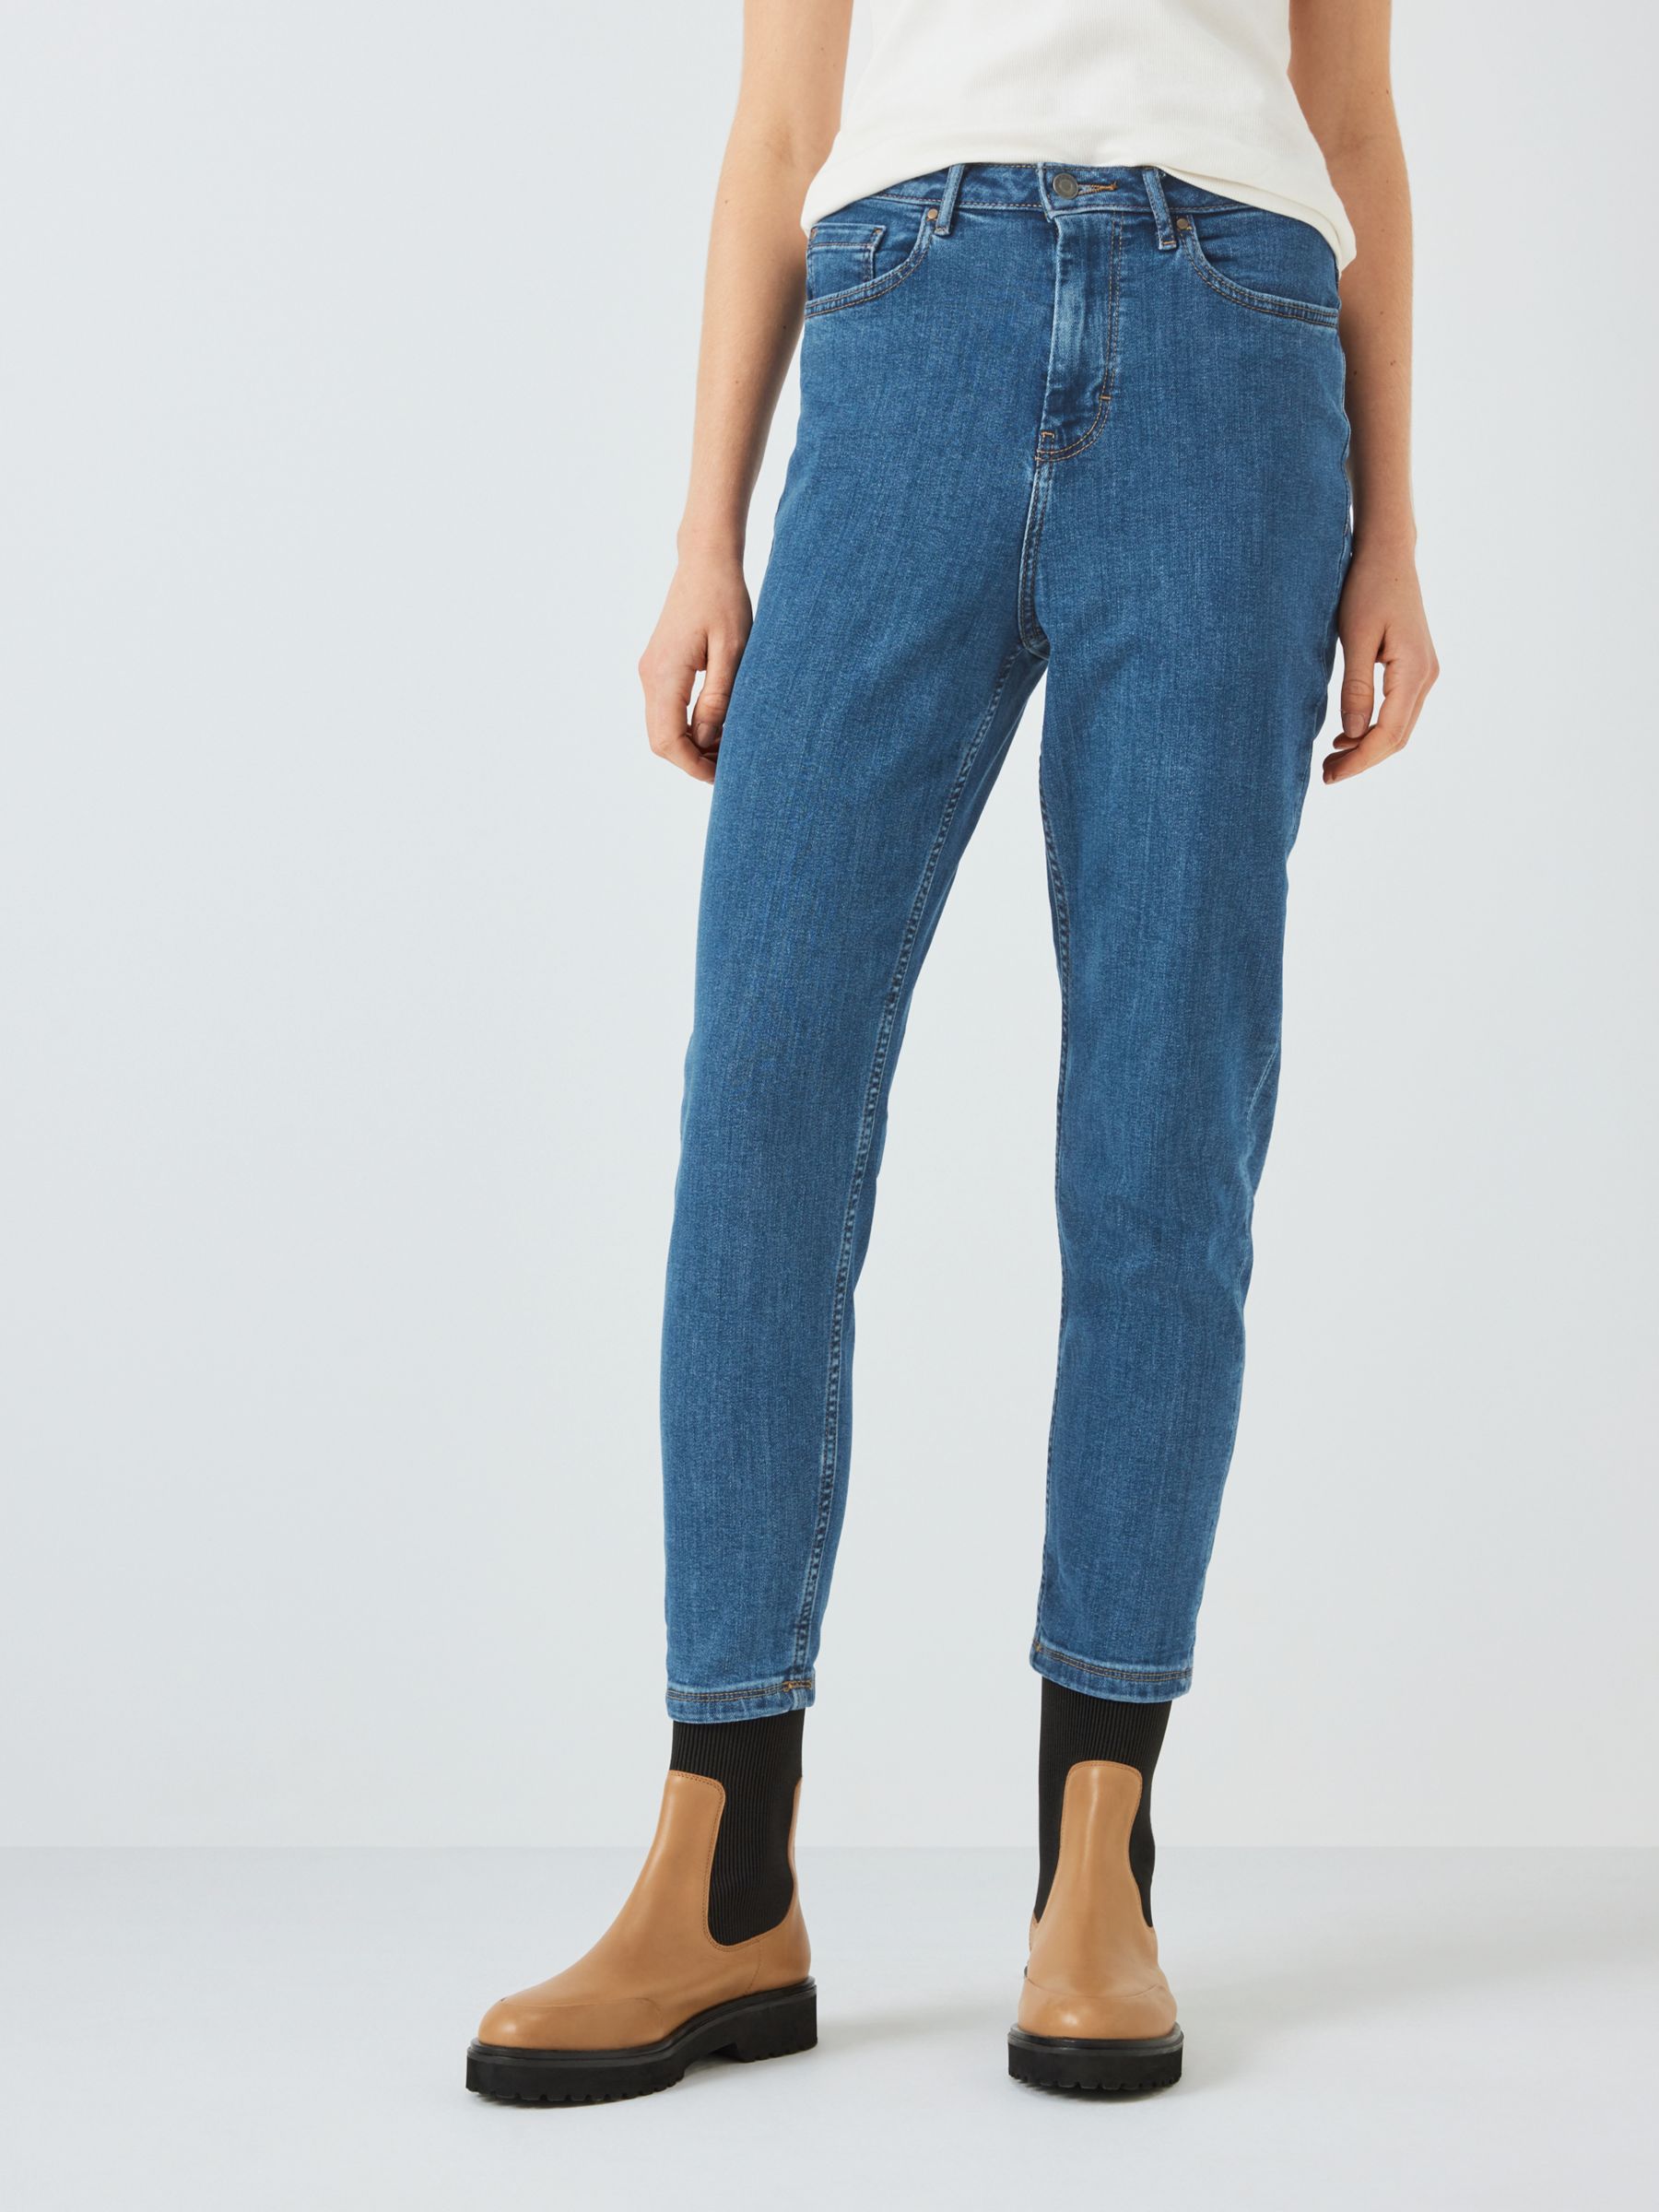 Women's Size 16 Jeans